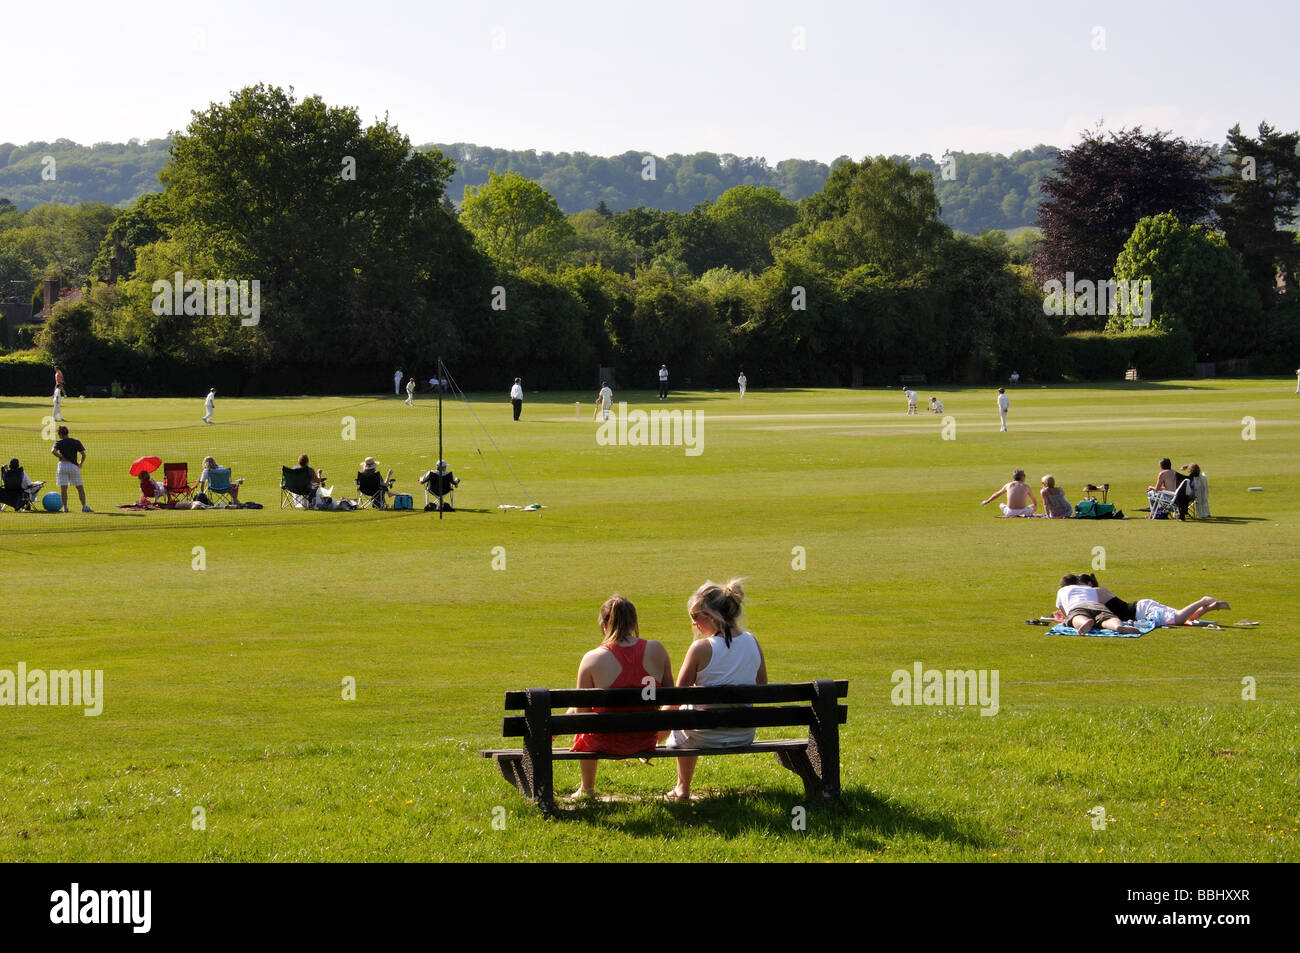 Match de cricket sur vert, Oxted, Surrey, Angleterre, Royaume-Uni Banque D'Images